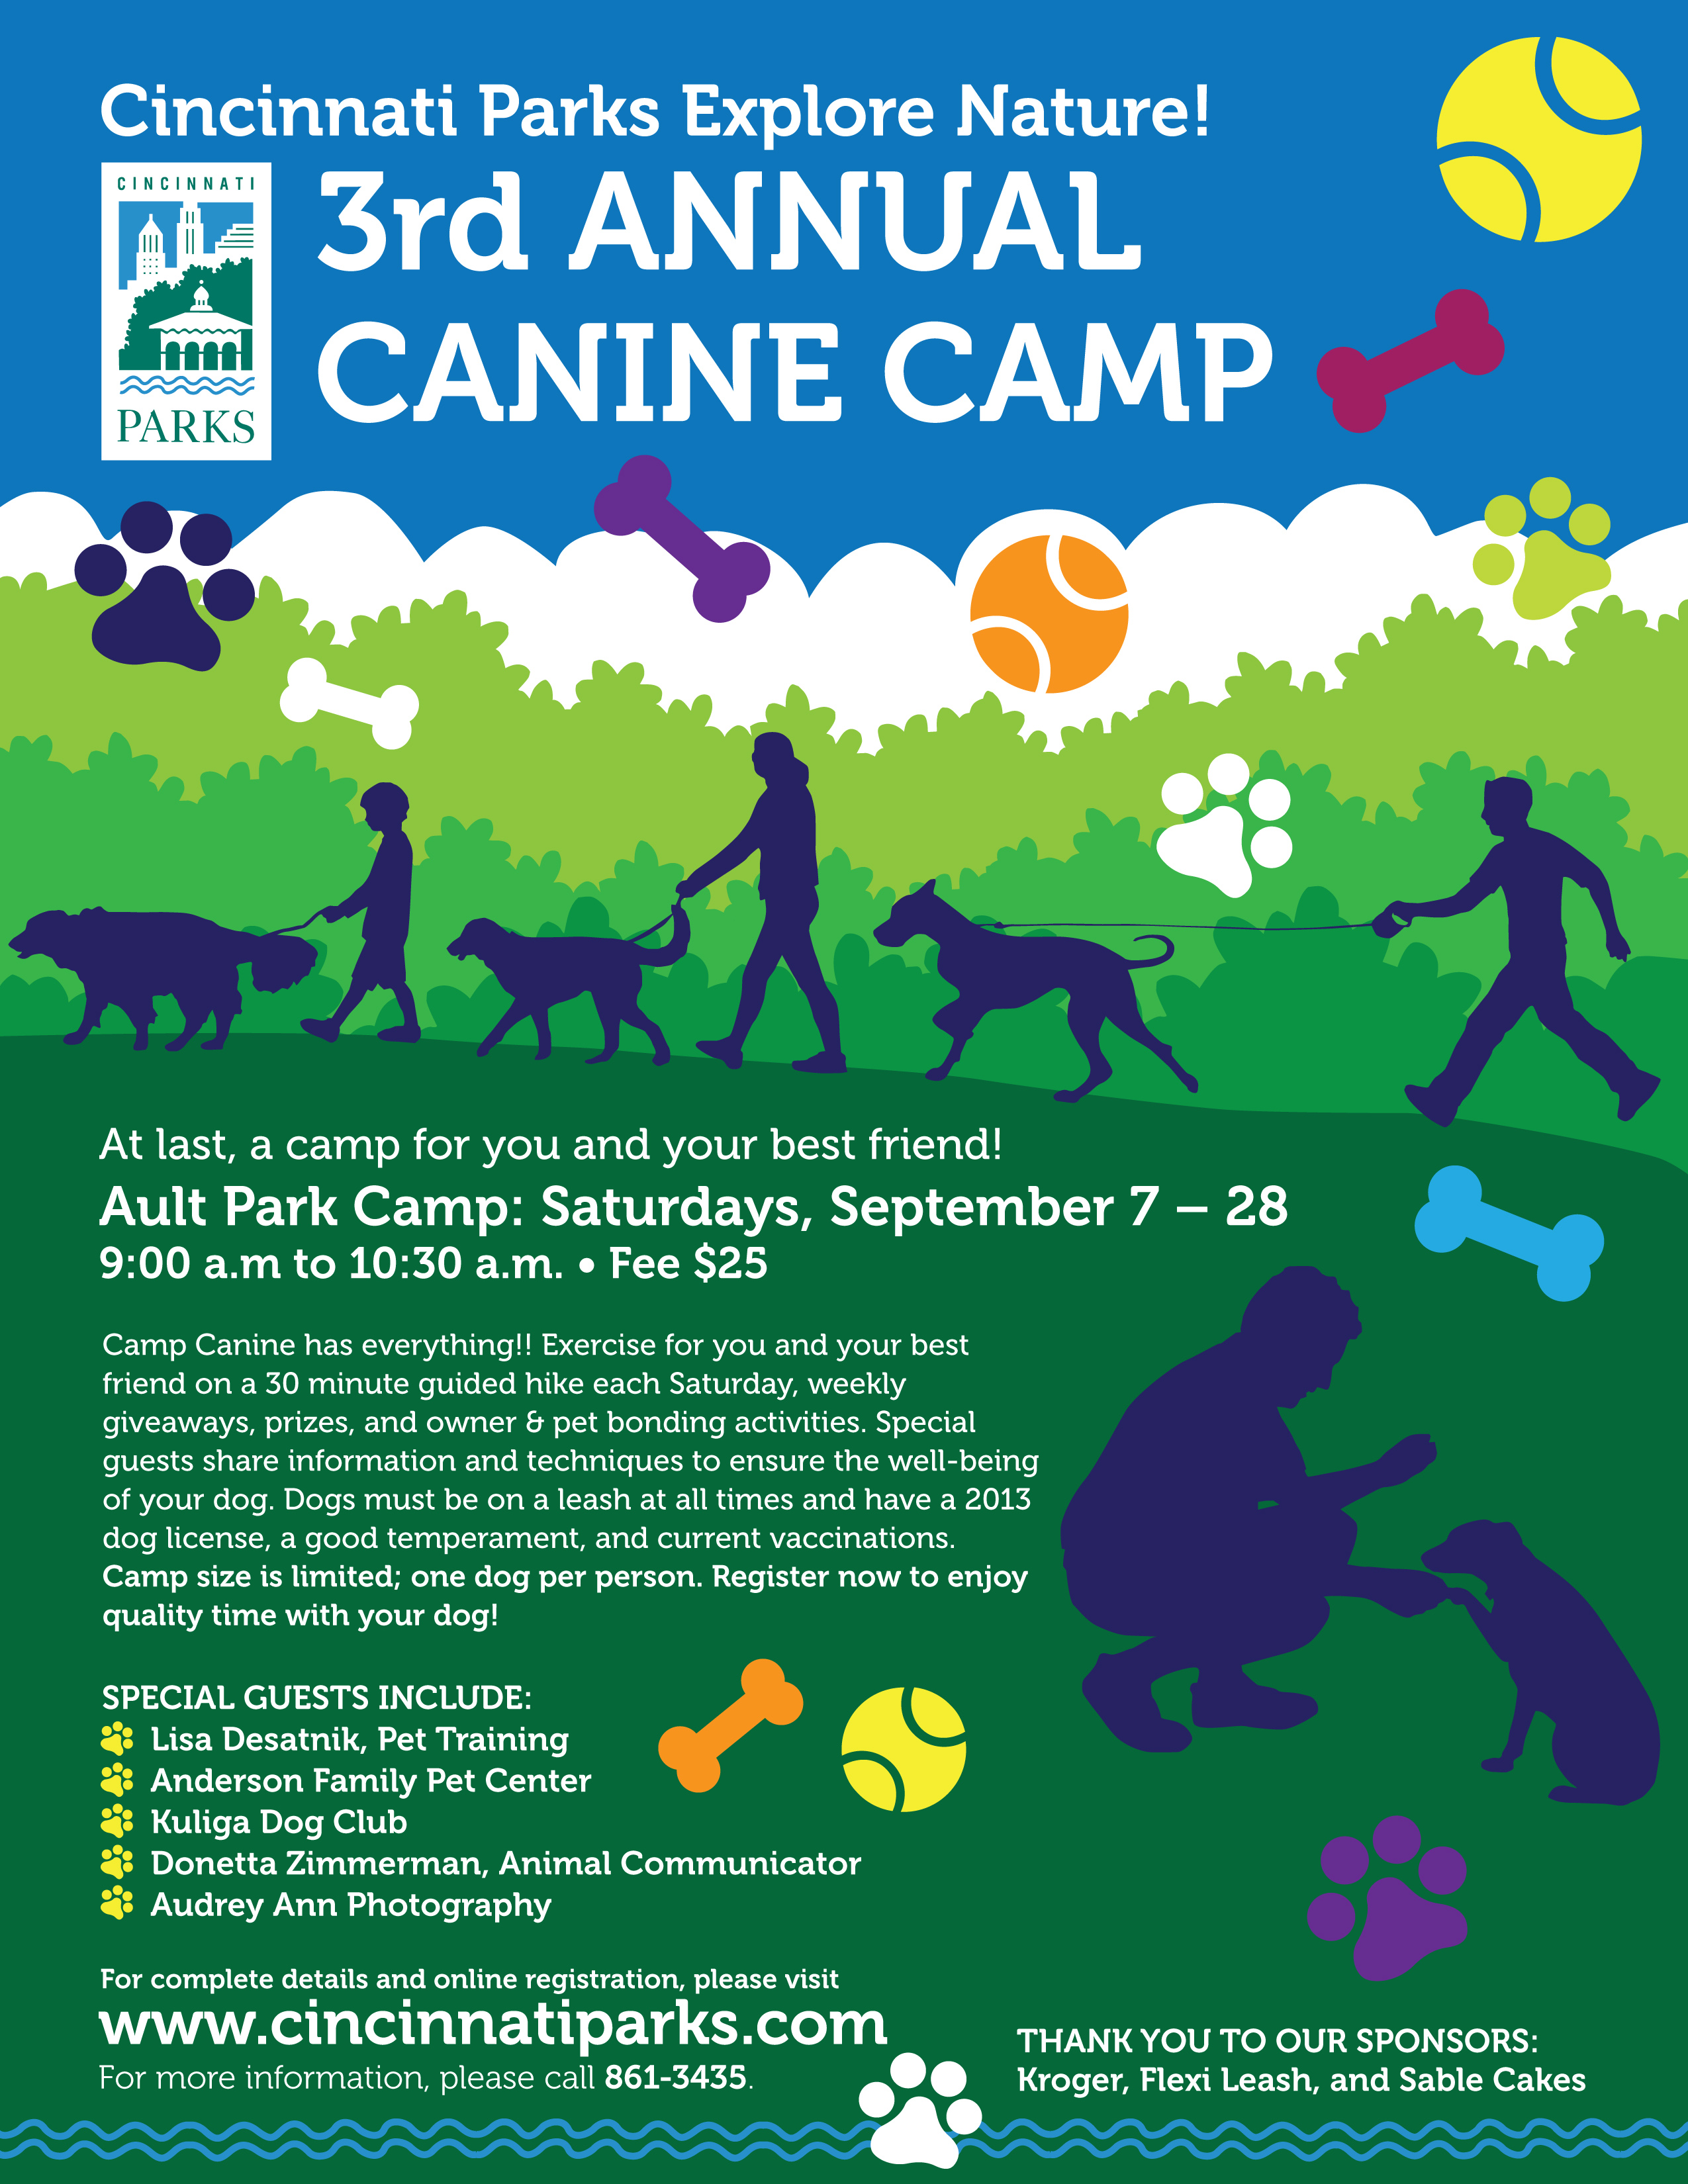 Cincinnati Parks Camp Canine